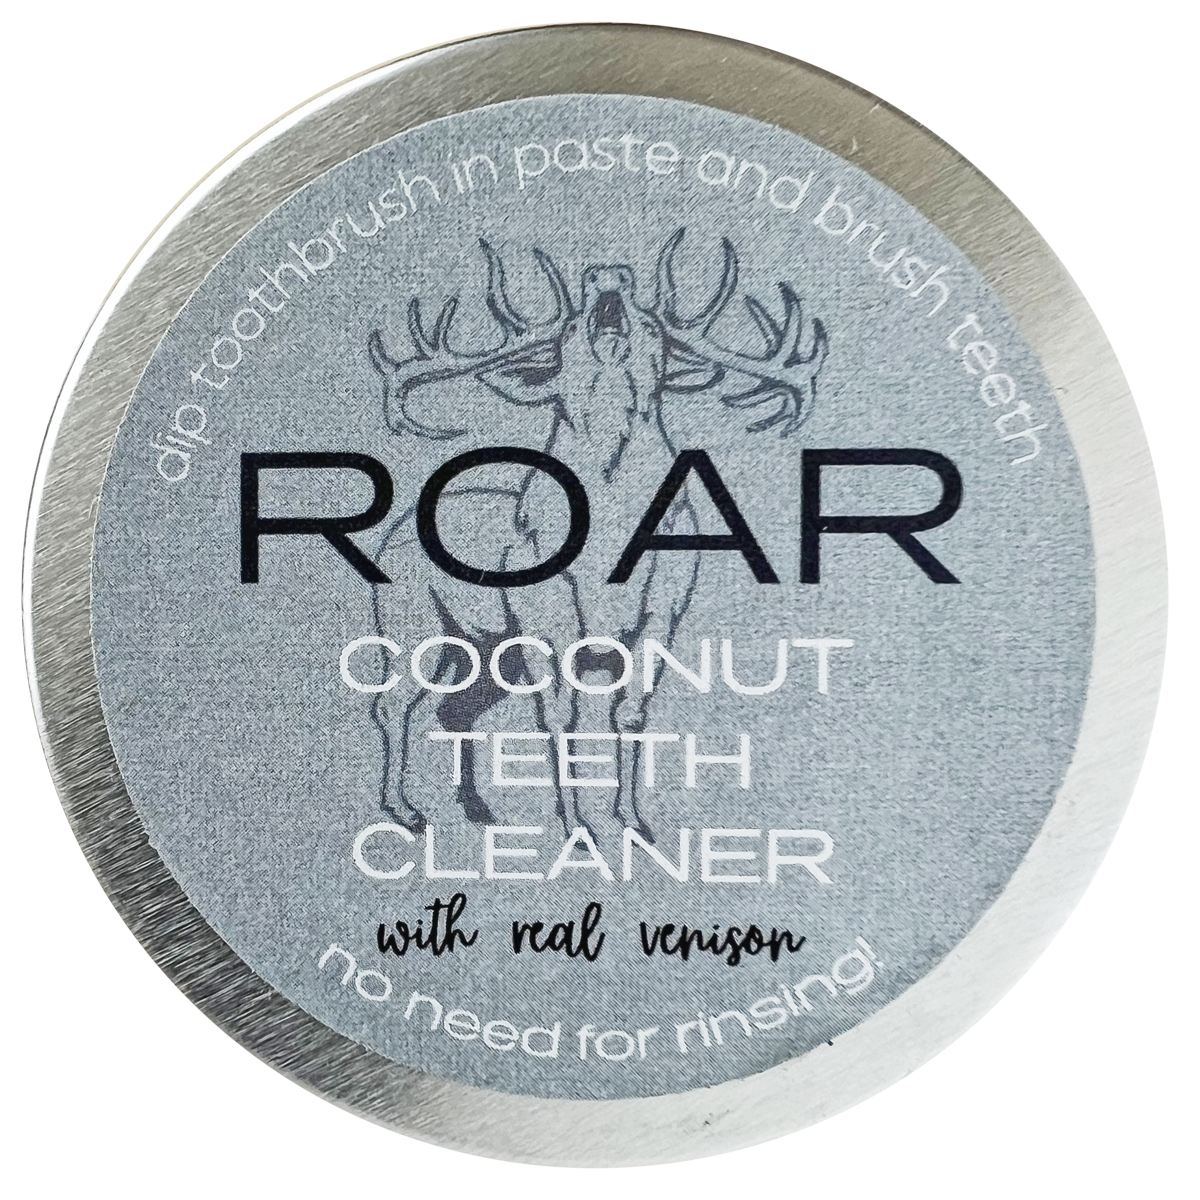 ROAR Coconut Teeth Cleaner Paste 30g